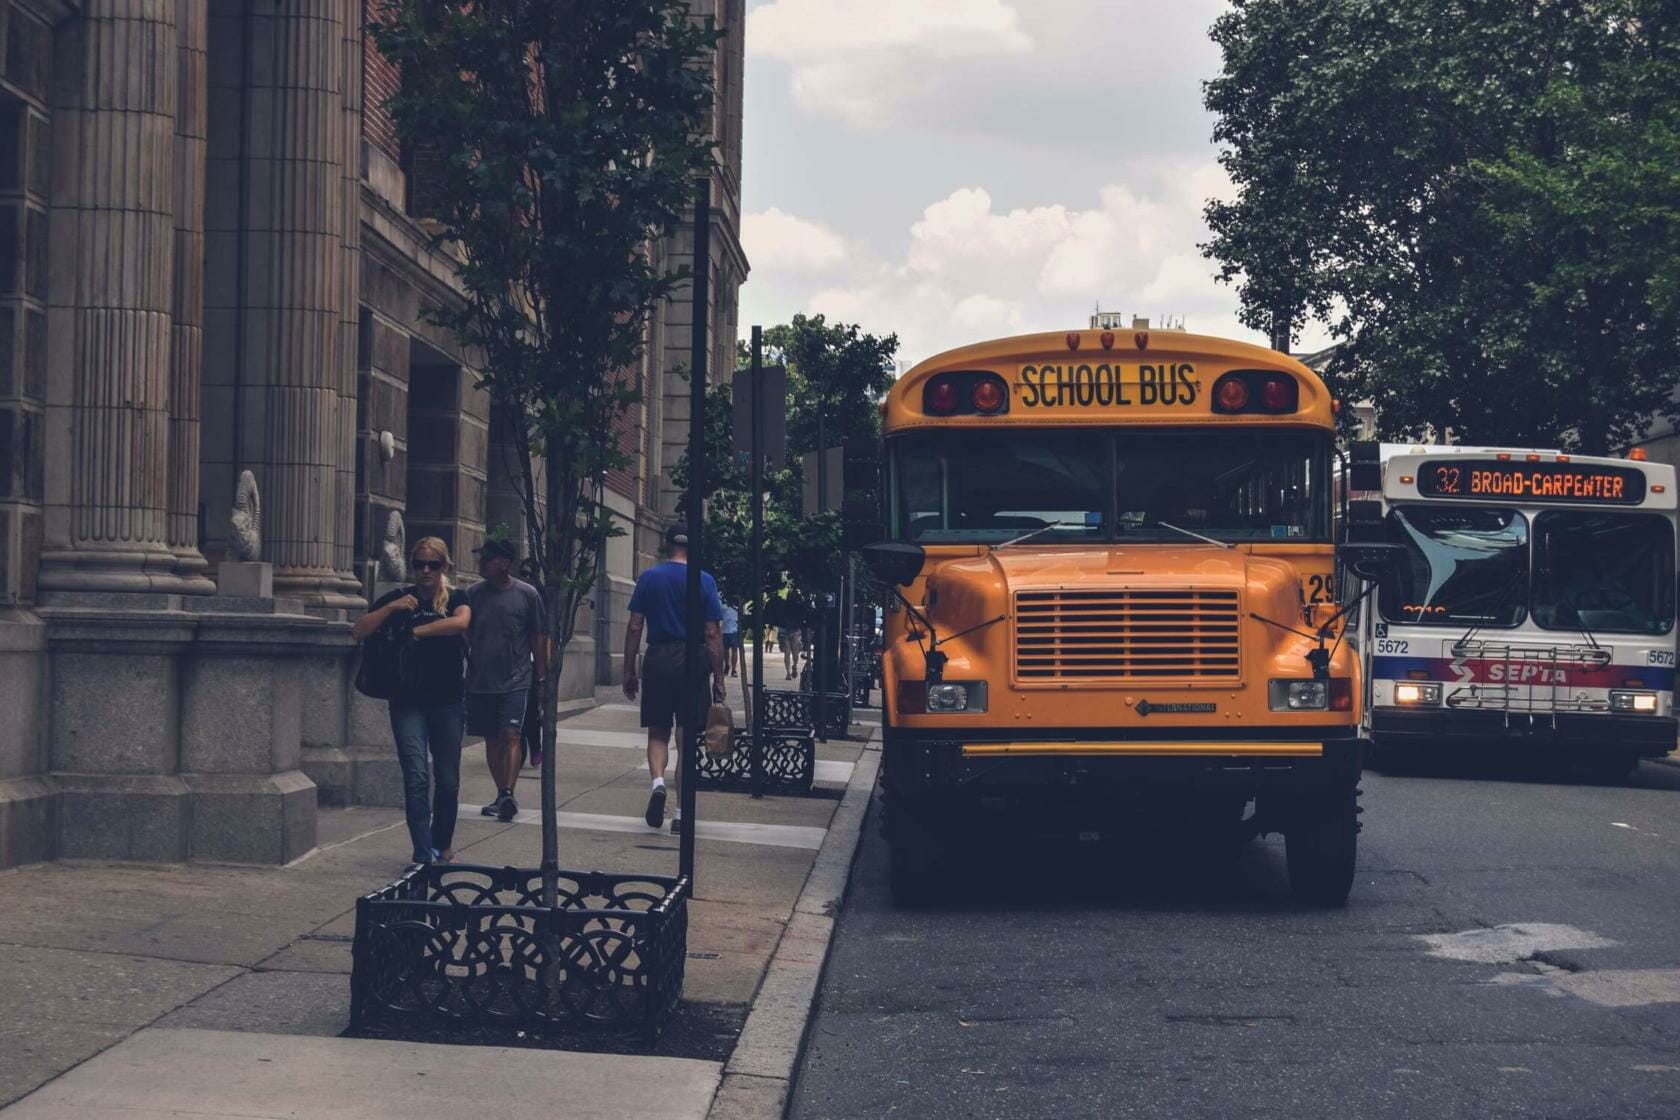 School bus parked on side of street near sidewalk